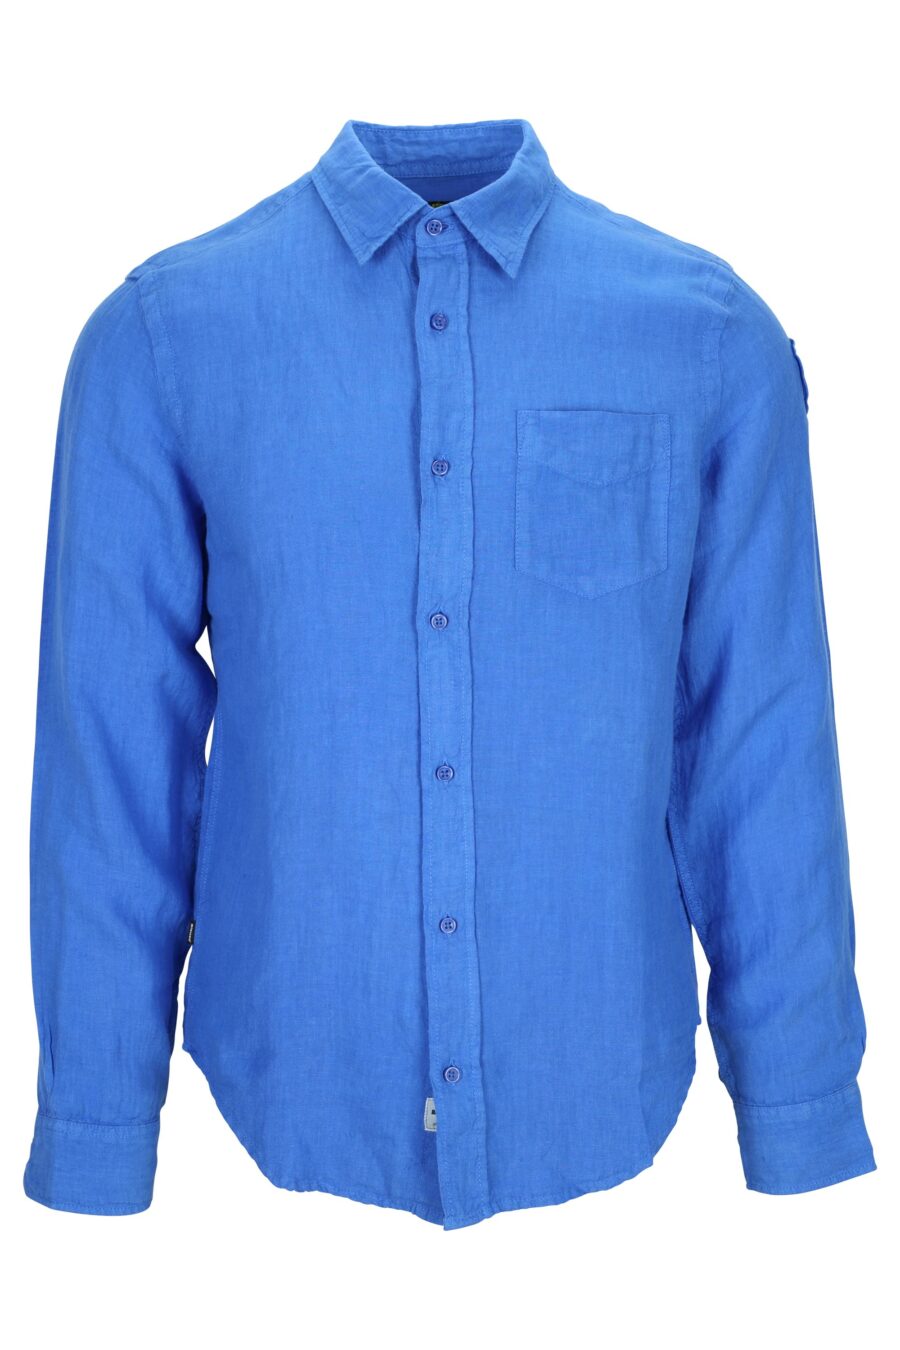 Camisa azul con minilogo escudo - 8058610776176